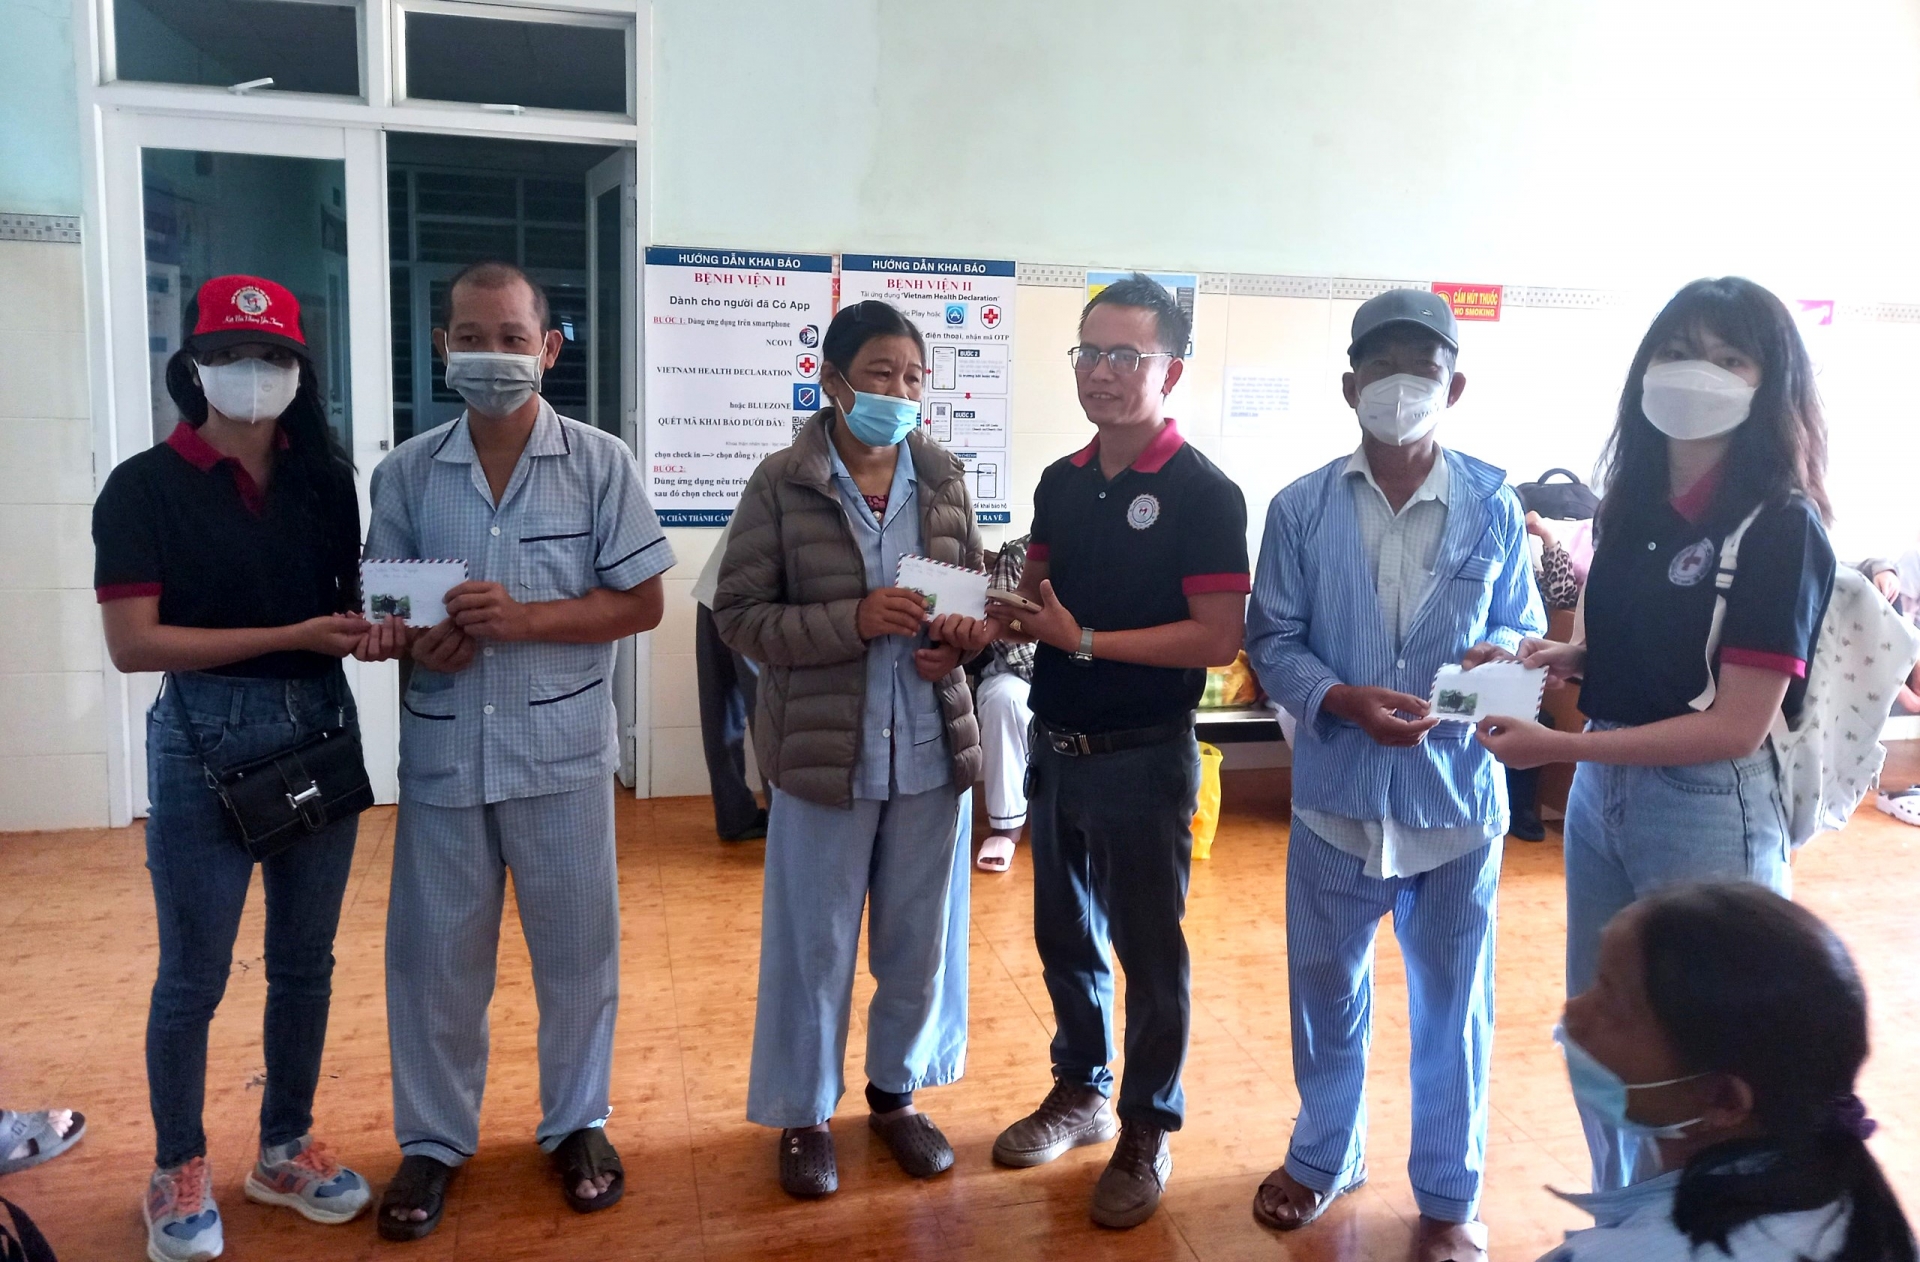 Nhà hảo tâm trao quà tết cho bệnh nhân có hoàn cảnh đặc biệt khó khăn đang chạy thận tại Bệnh viện II Lâm Đồng